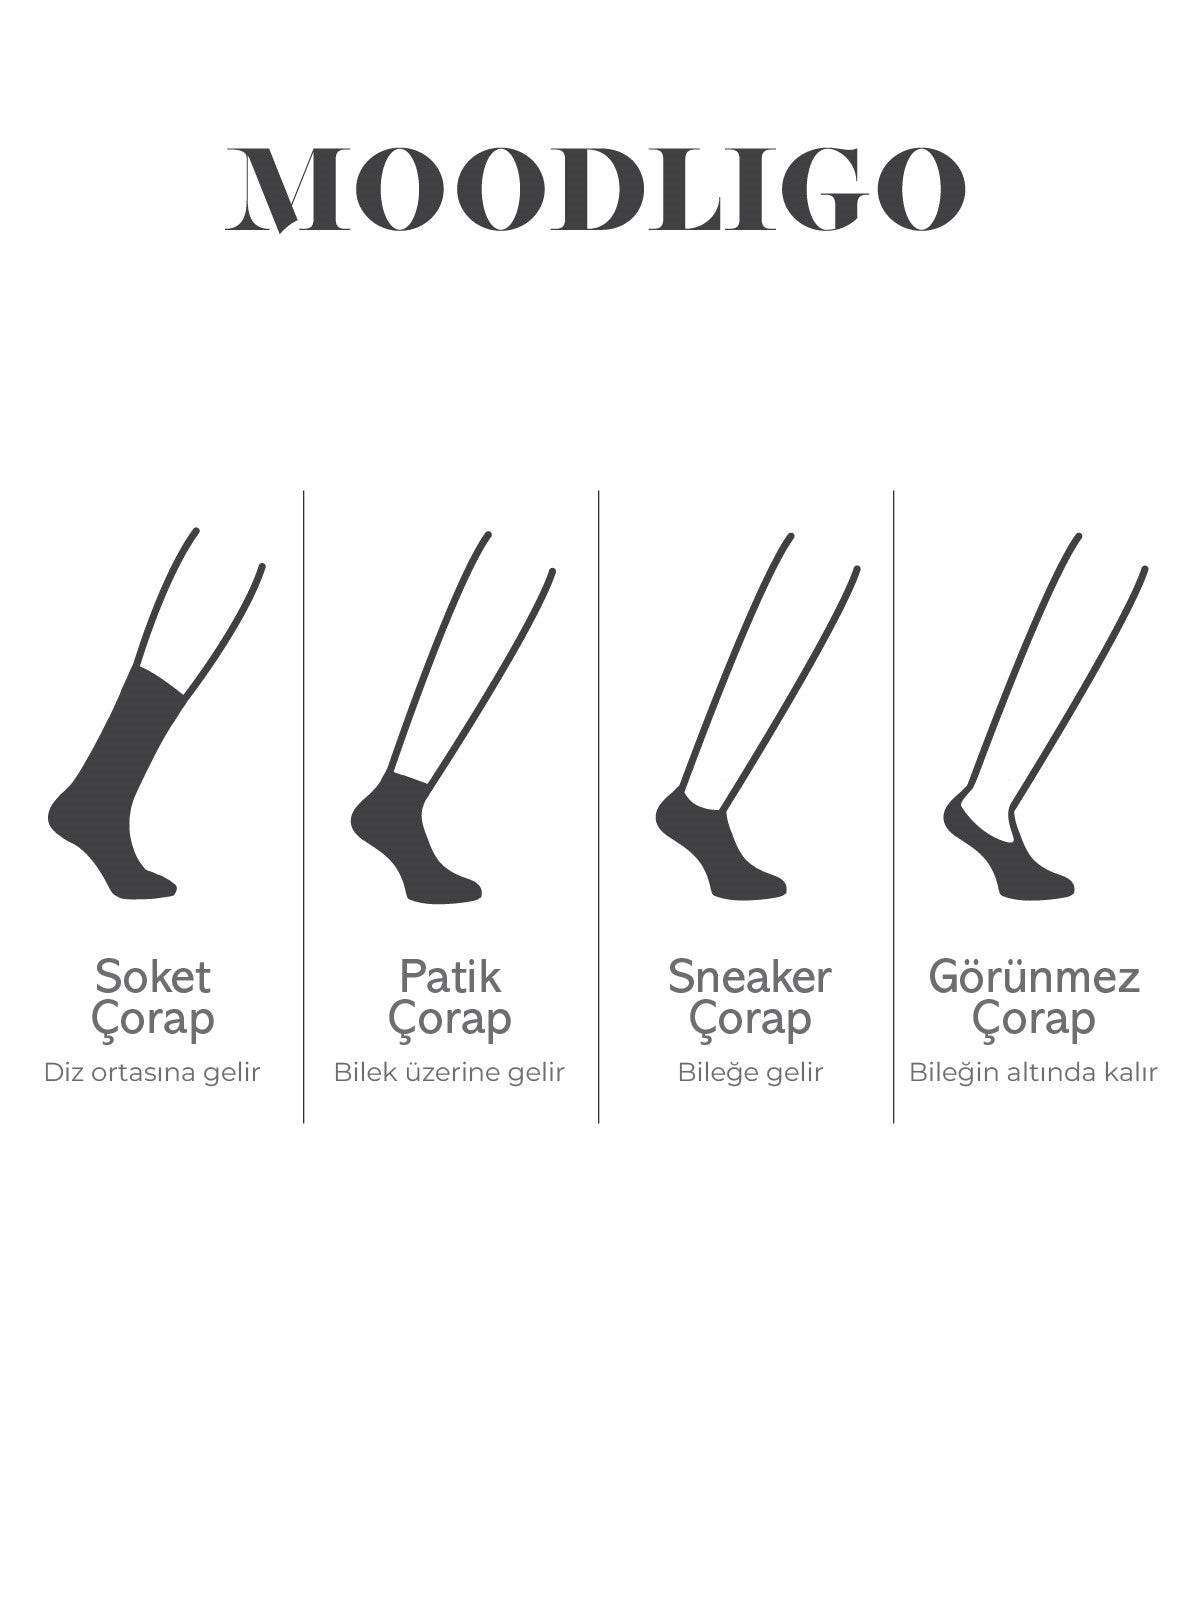 Kadın 6'lı Premium Bambu Soket Çorap - Kutulu